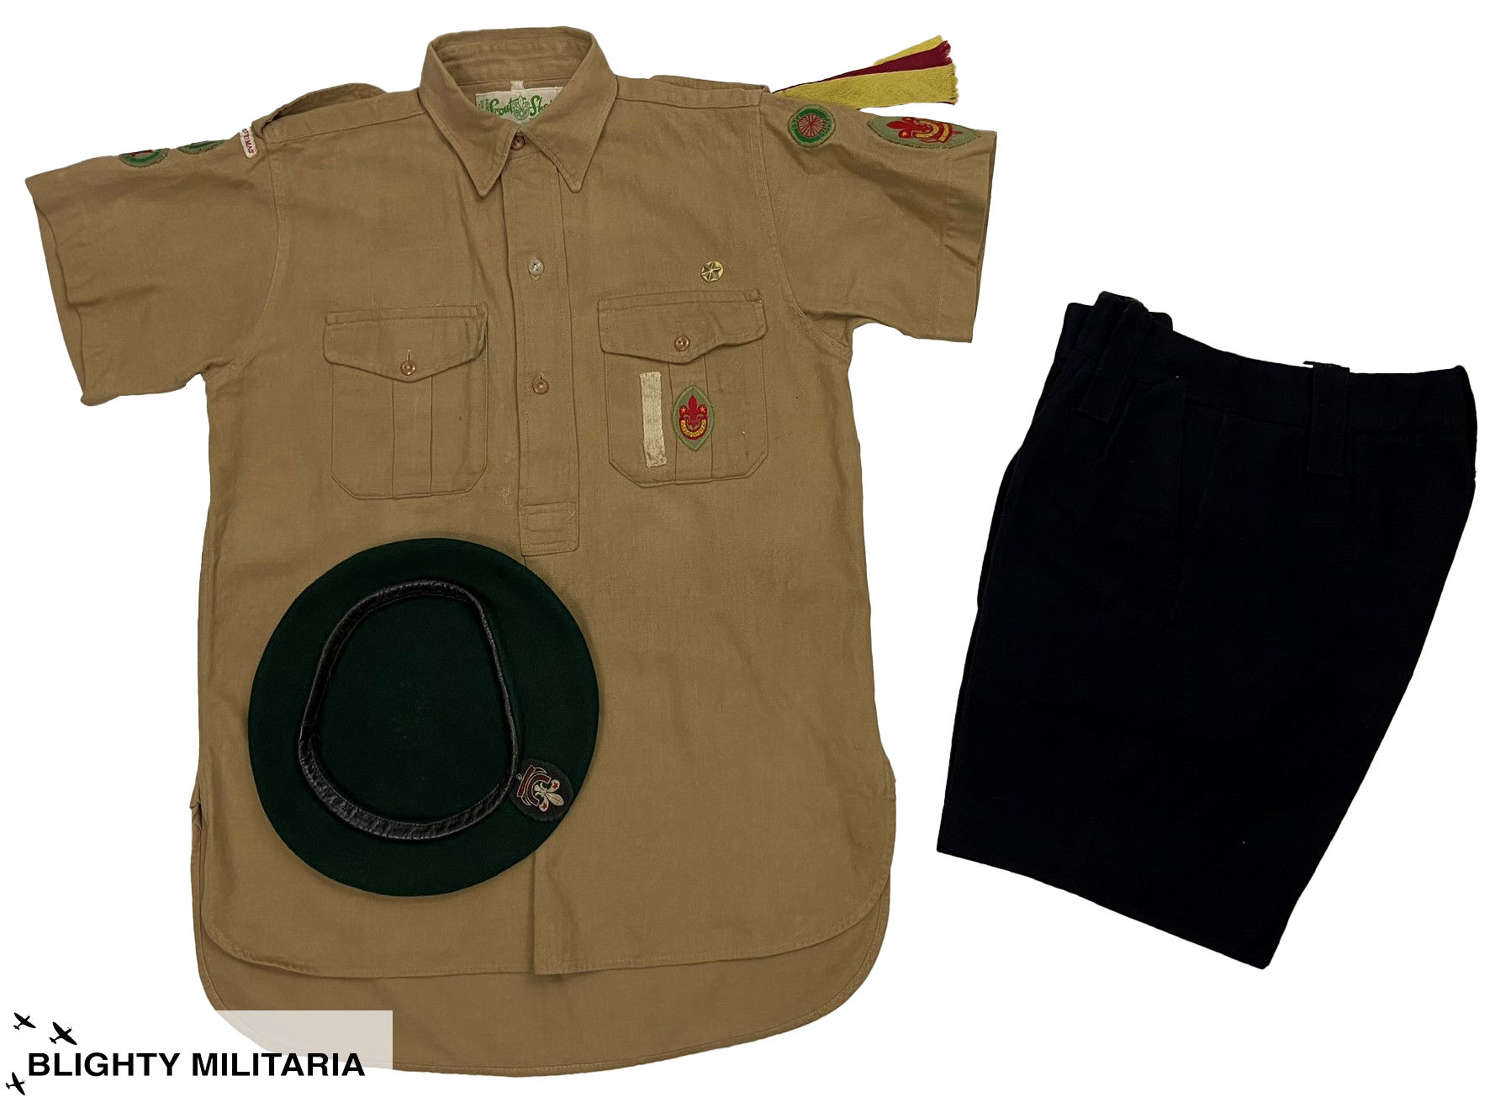 Original 1950s Boy Scouts Uniform